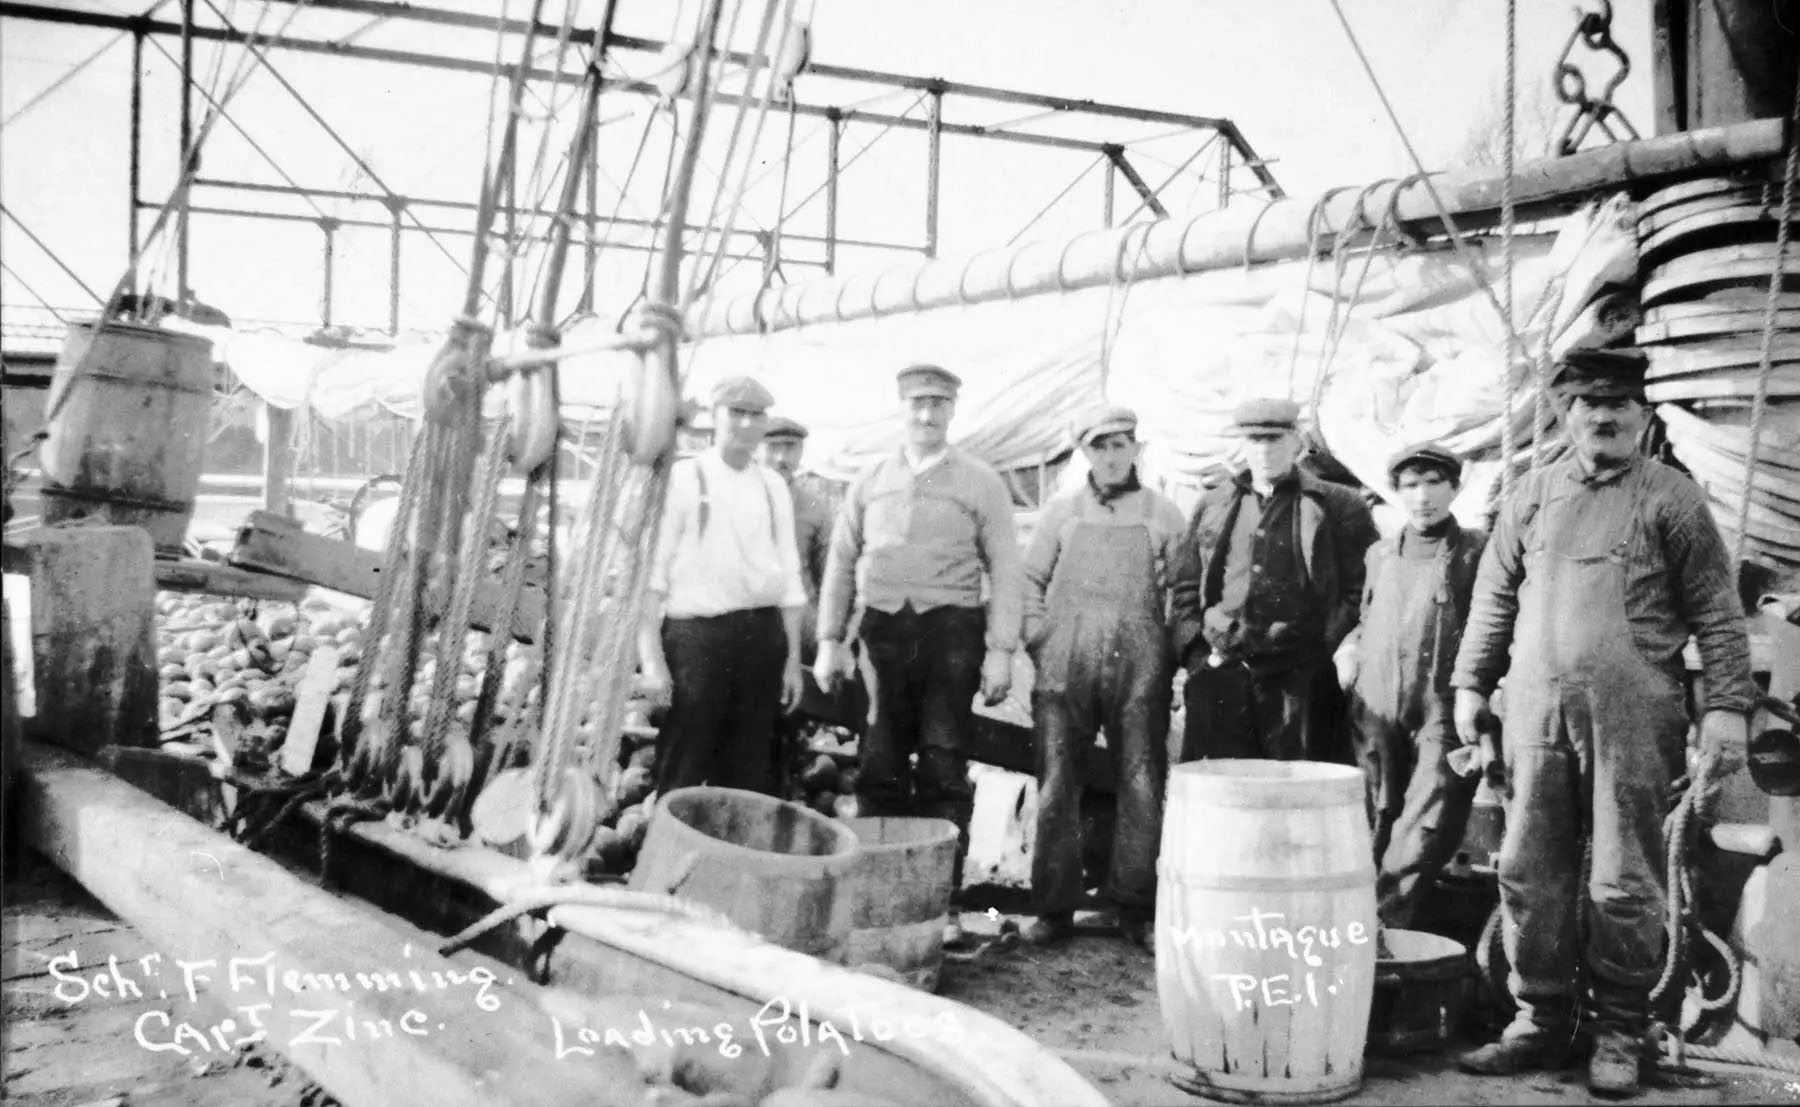 Sept hommes se tiennent sur le pont d’une goélette à quai, les voiles ferlées, et on peut voir des tas de pommes de terre et quelques barils.